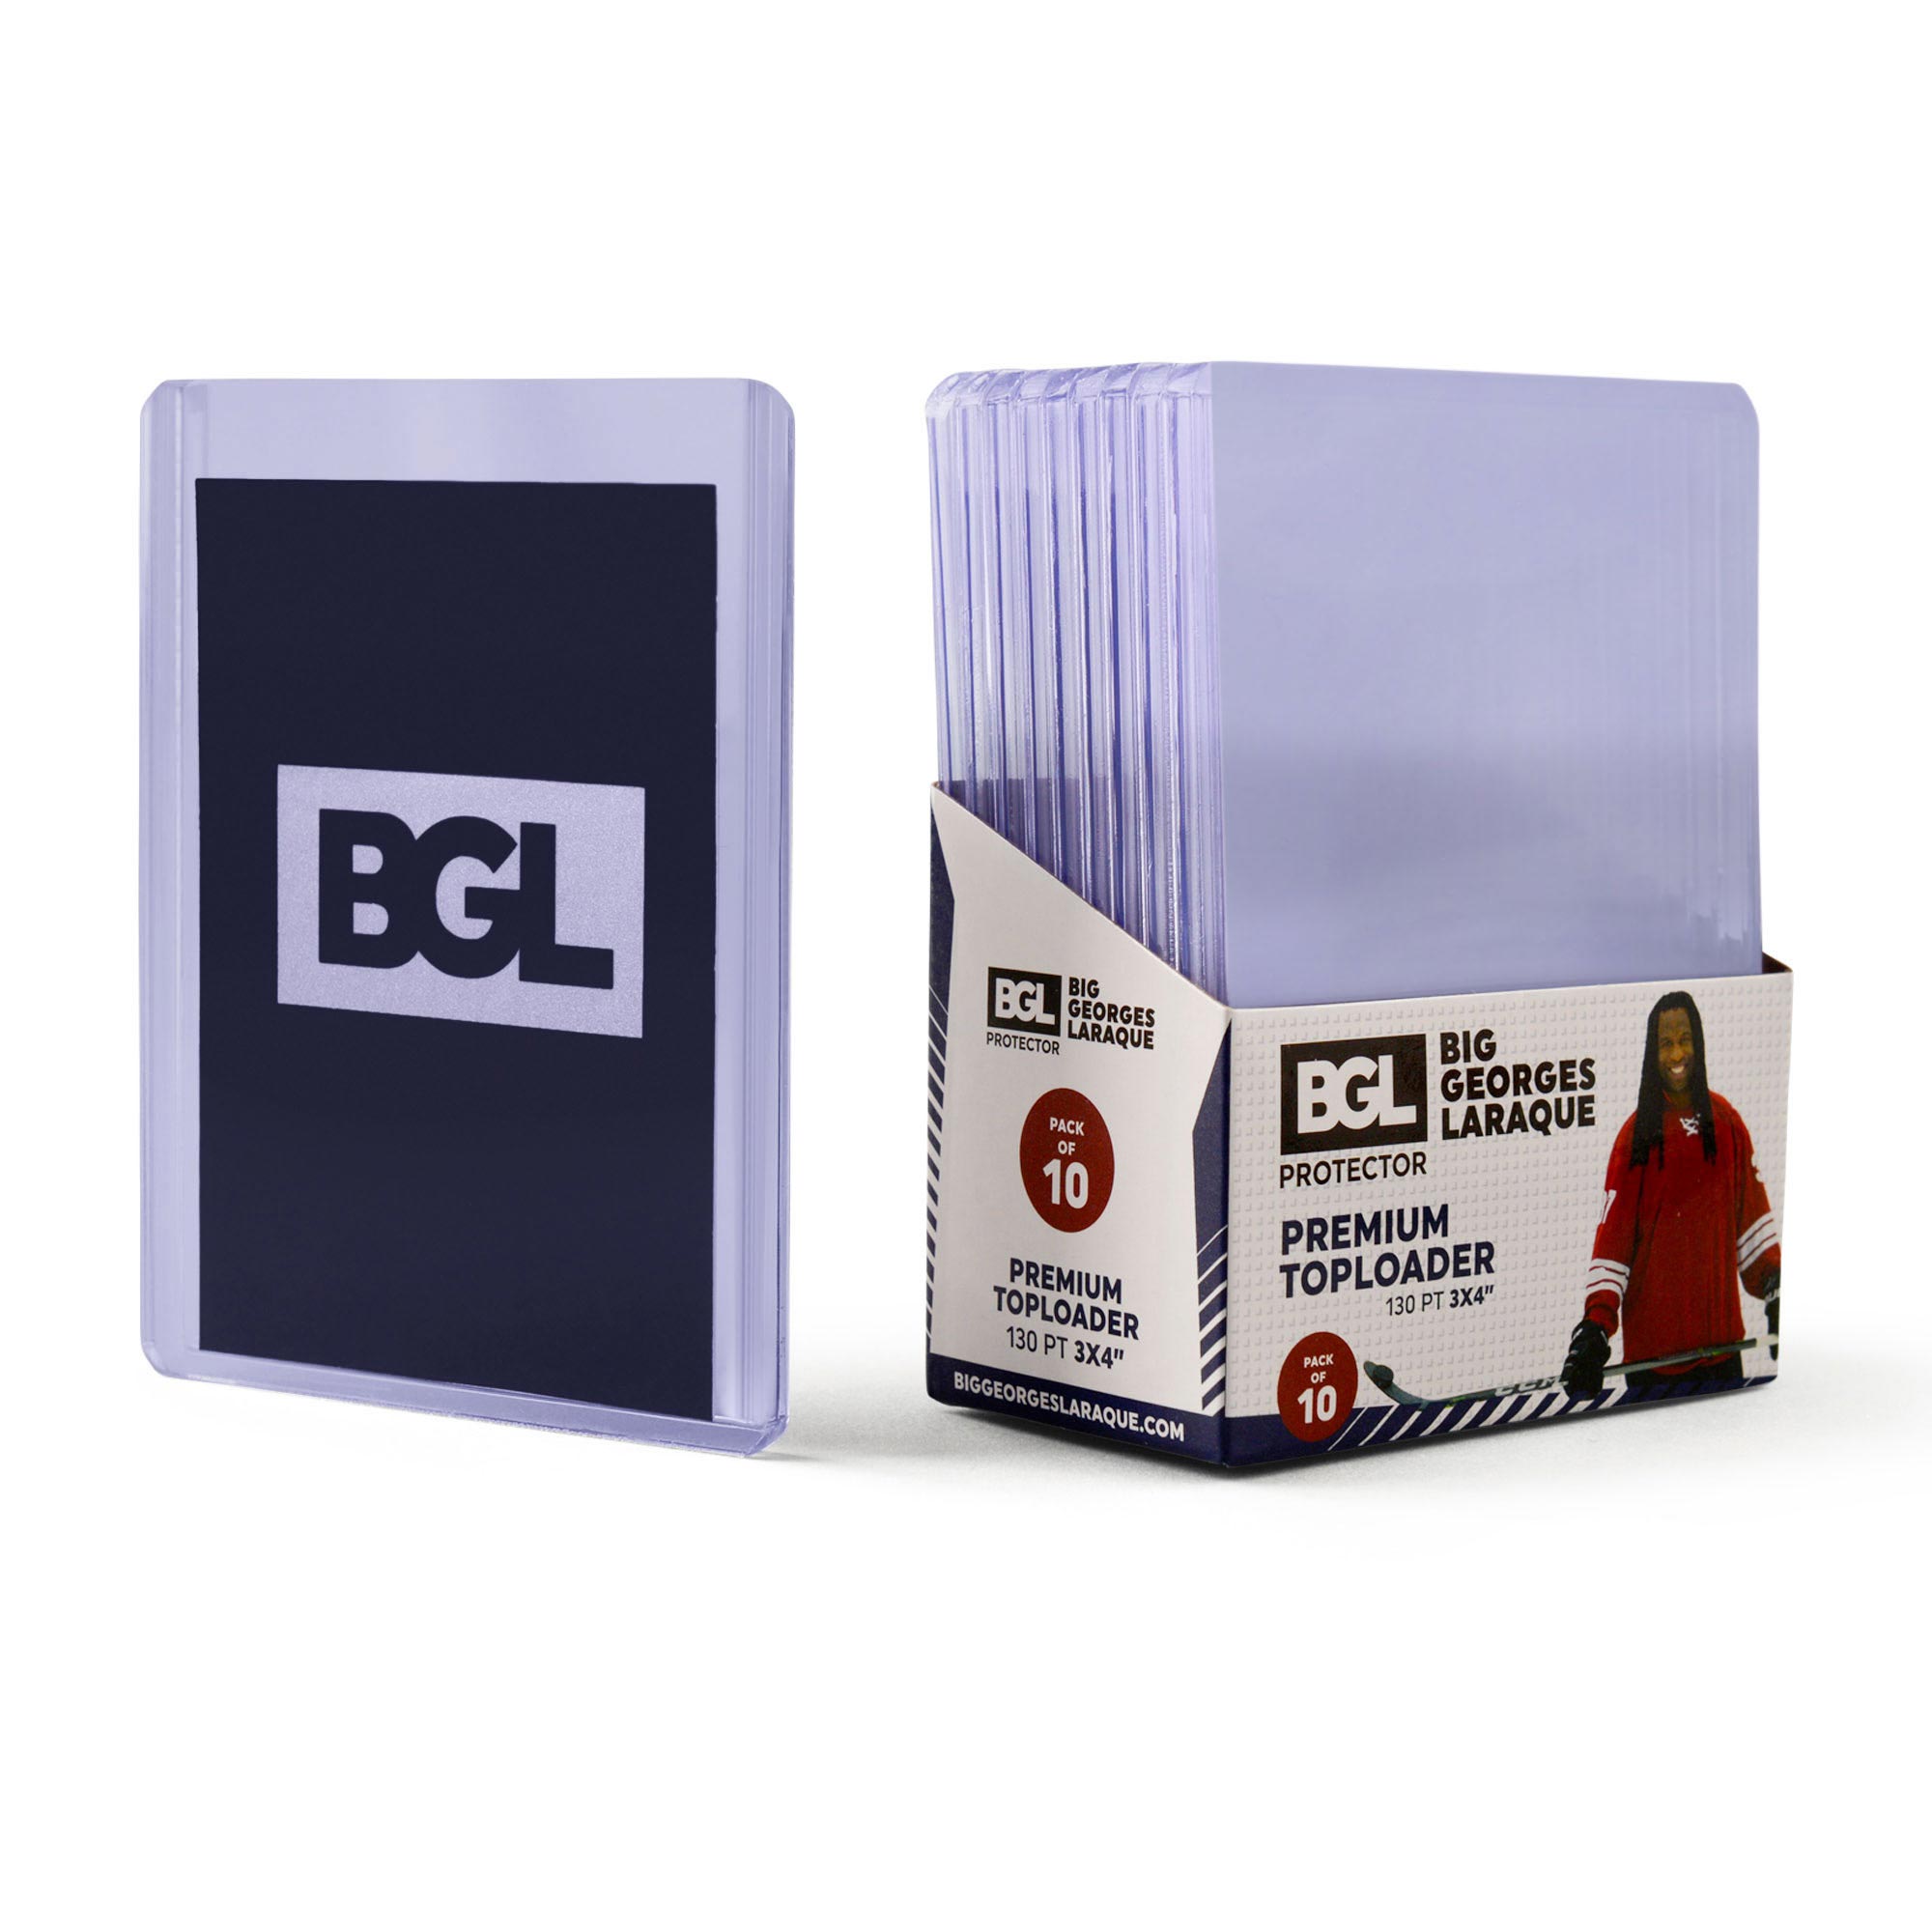 BGL Toploader 130 PT - BGL Protector  Trading Card Protectors by Big  Georges Laraque